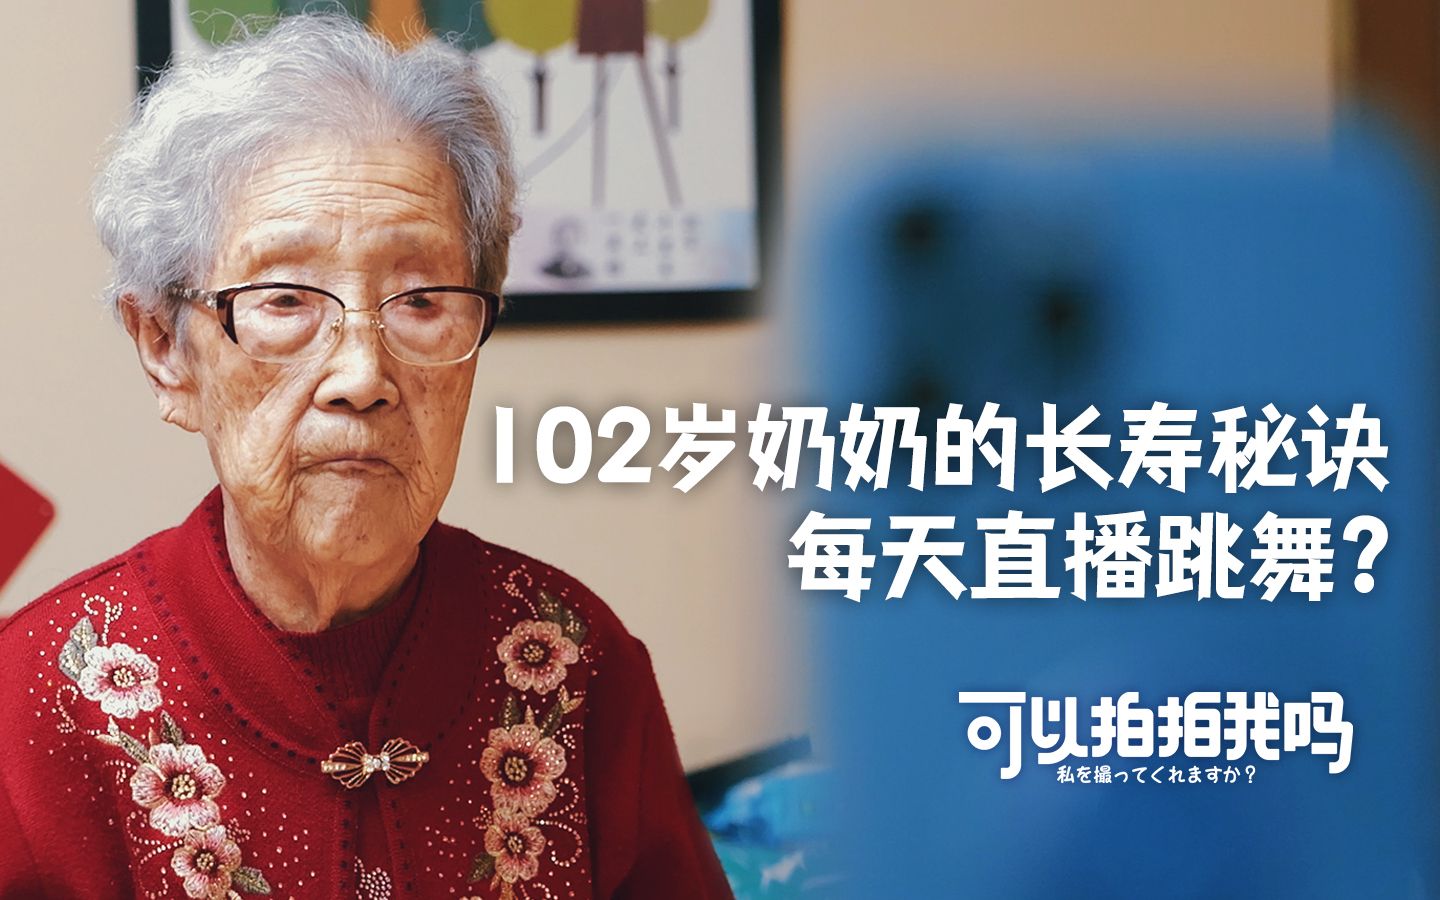 【可以拍拍我吗】EP2 102岁老人活着的动力：每月拿4000元退休金，全部留给子孙